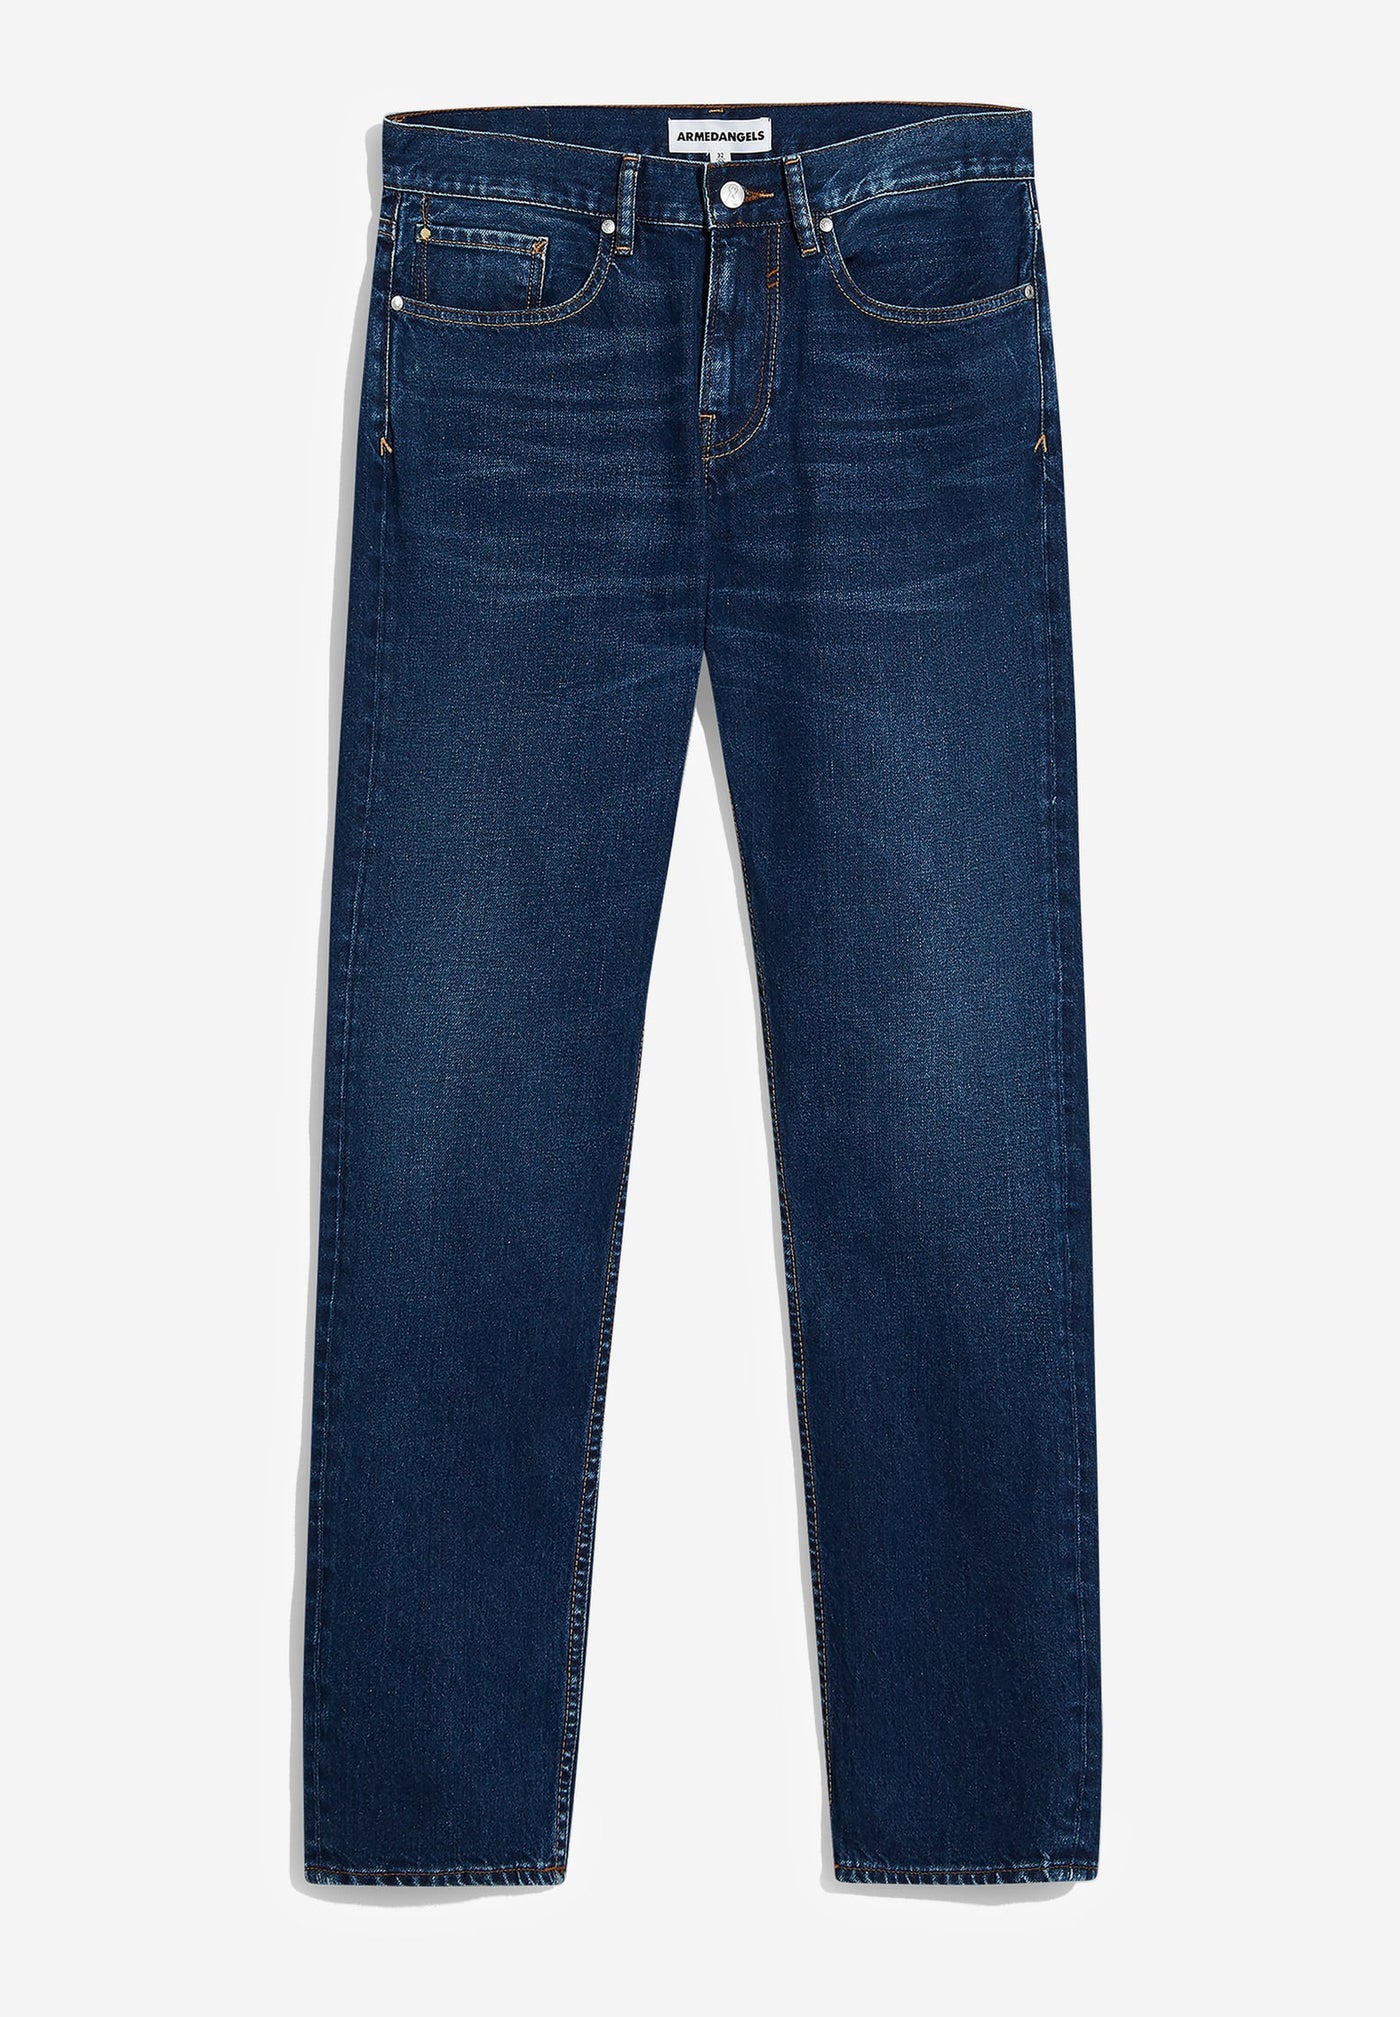 DYLAANO Herren Jeans 100 % rec. cotton